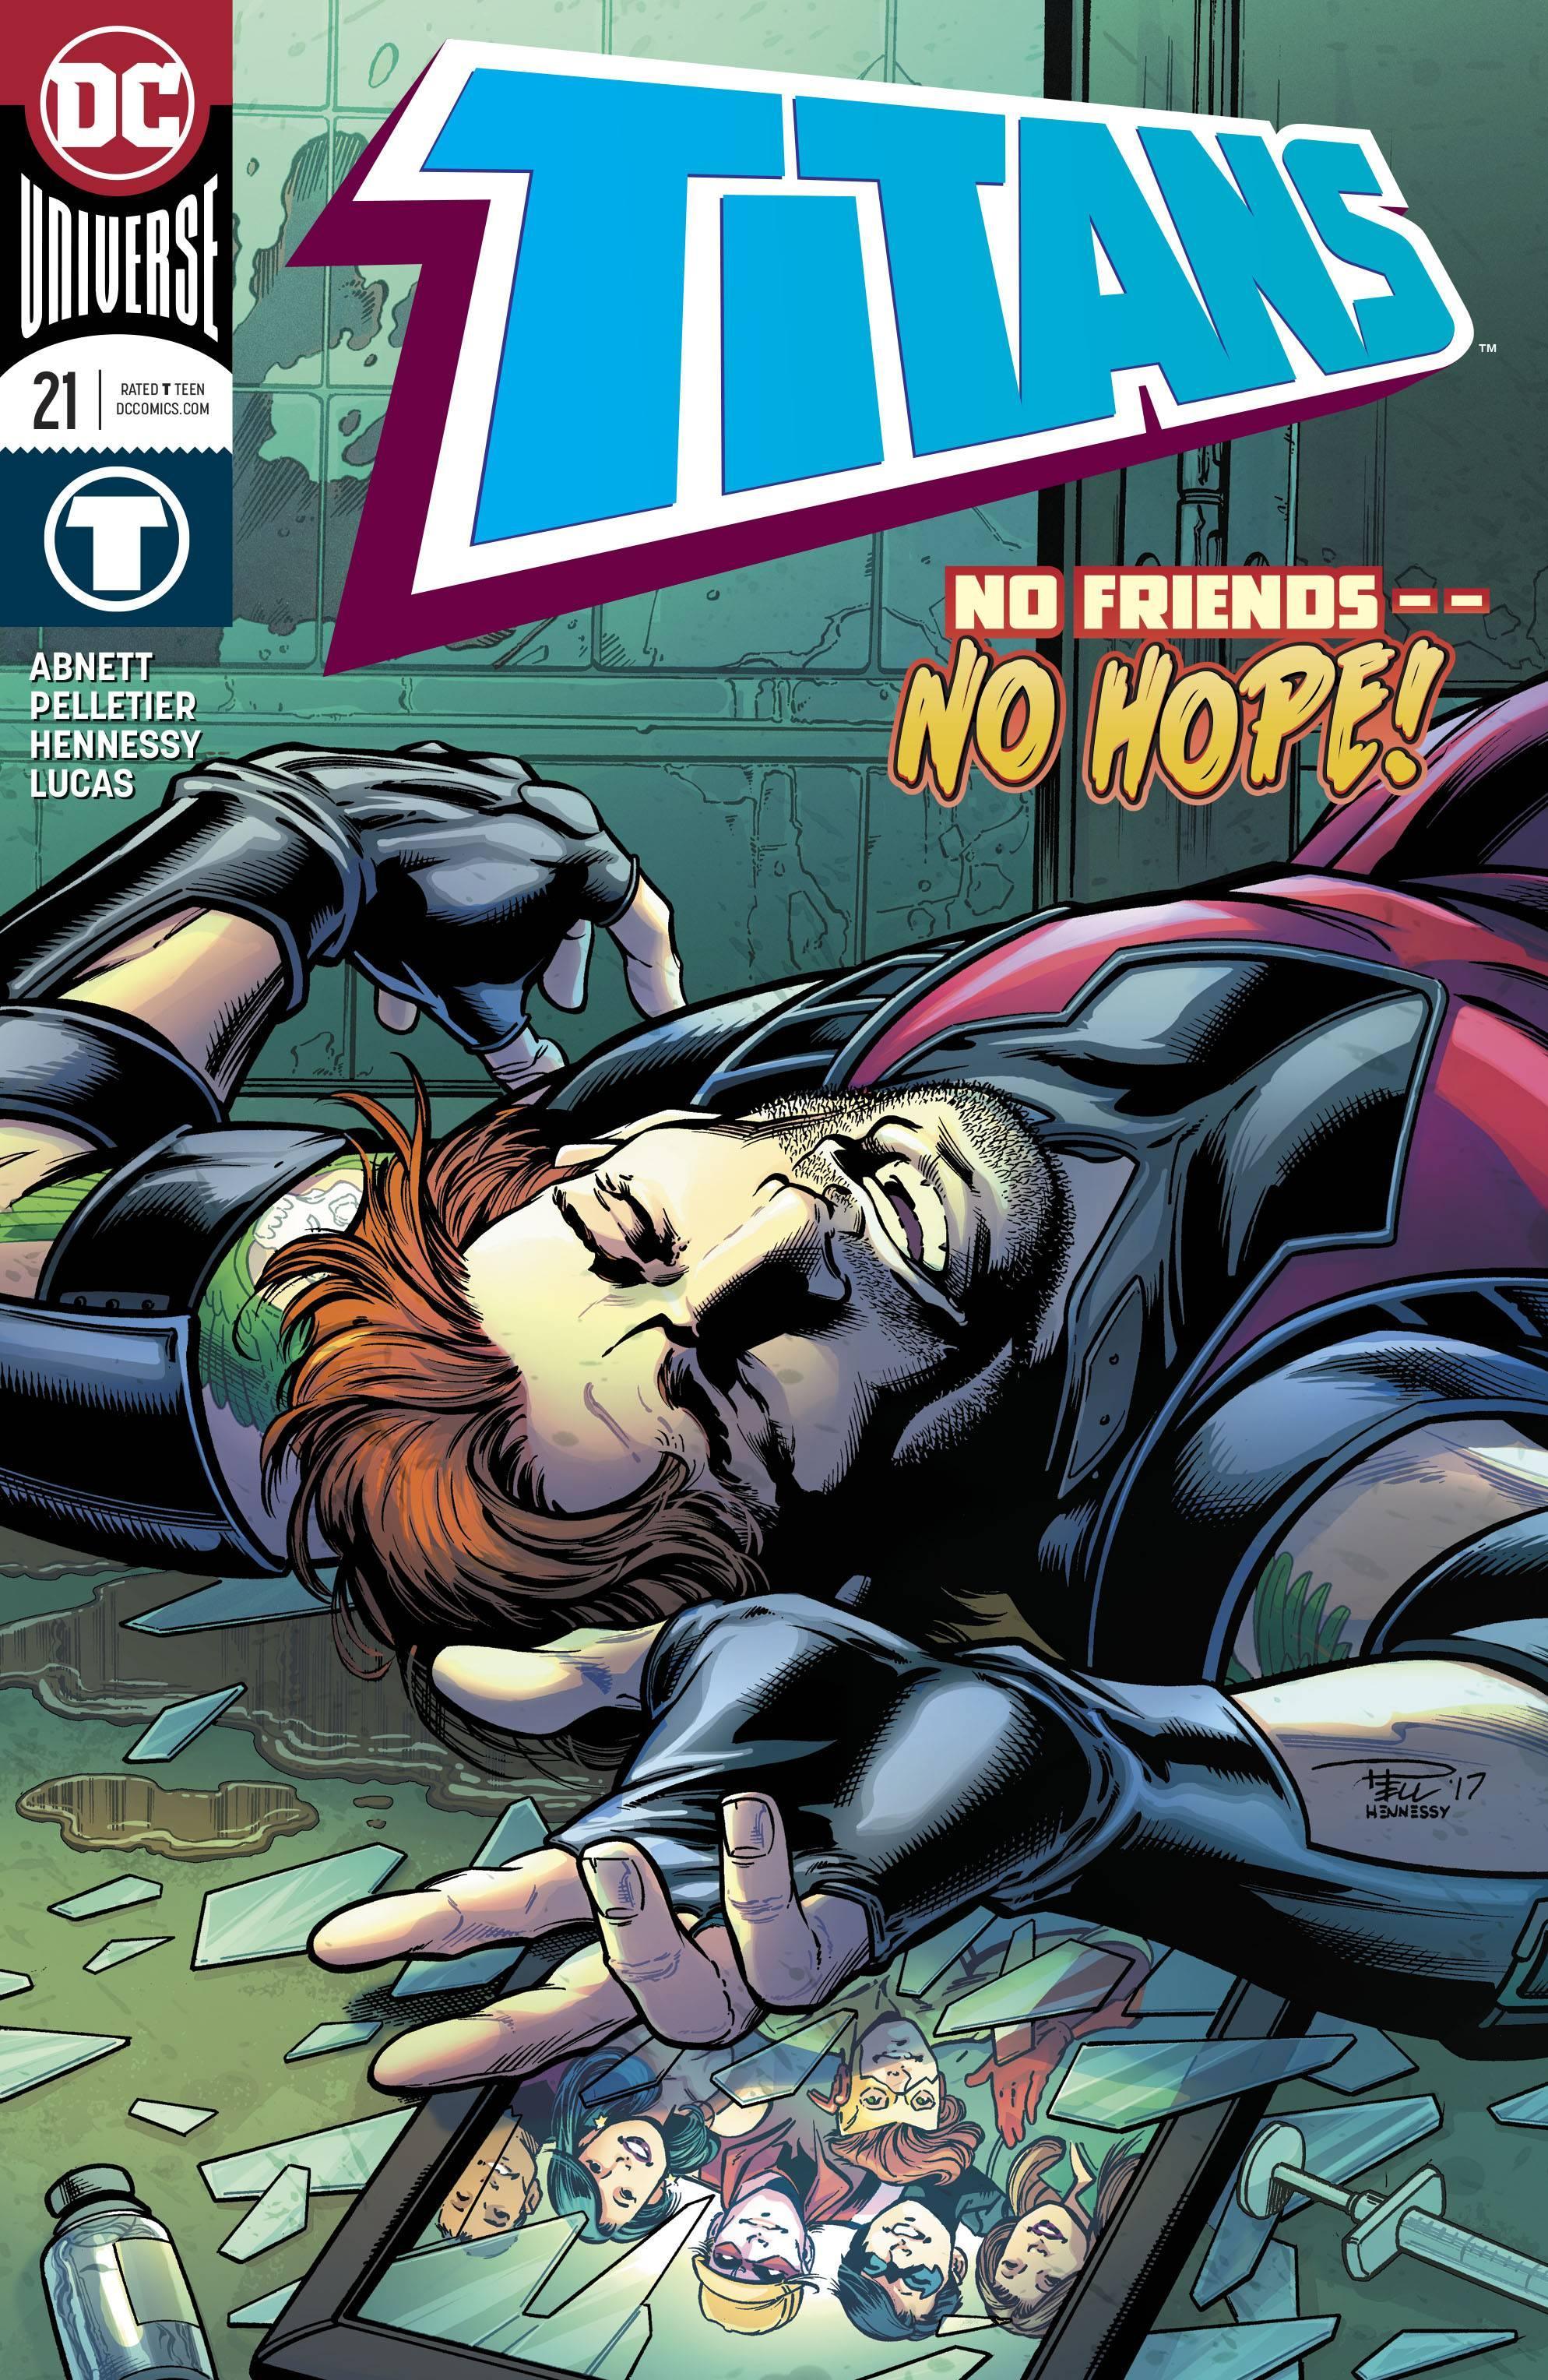 TITANS VOL 3 #21 - Kings Comics